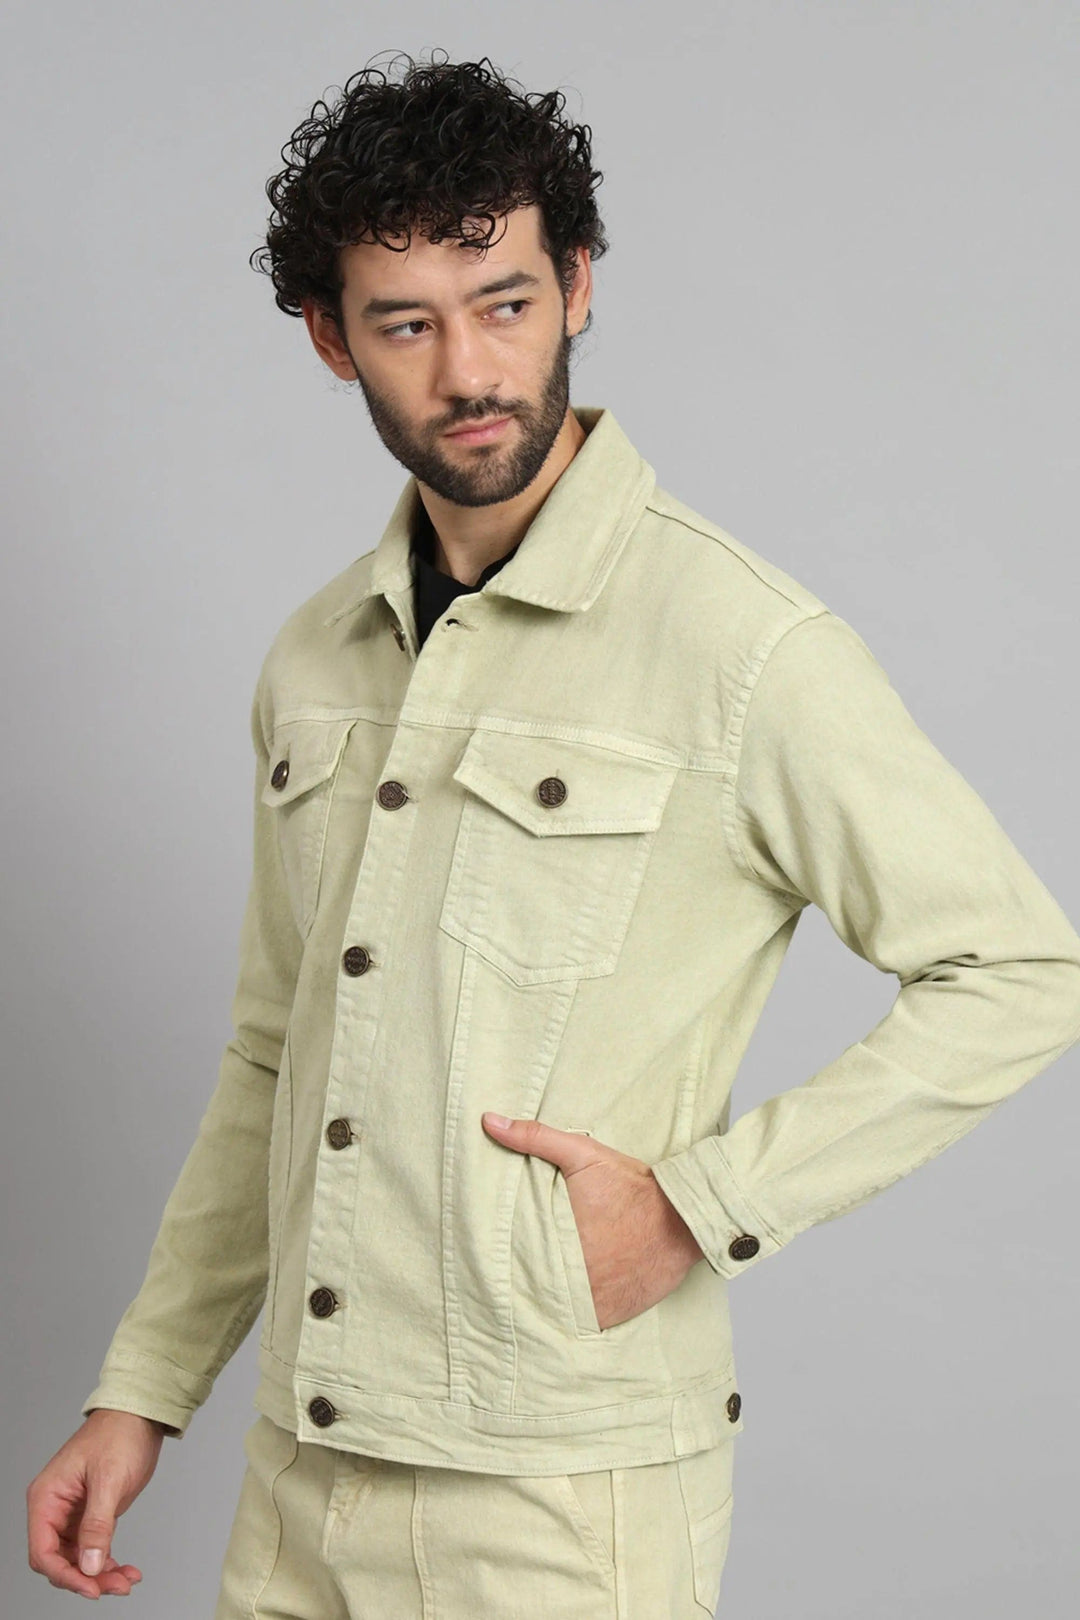 Regular Fit Pista Lime Color Denim Jacket for Men - Peplos Jeans 